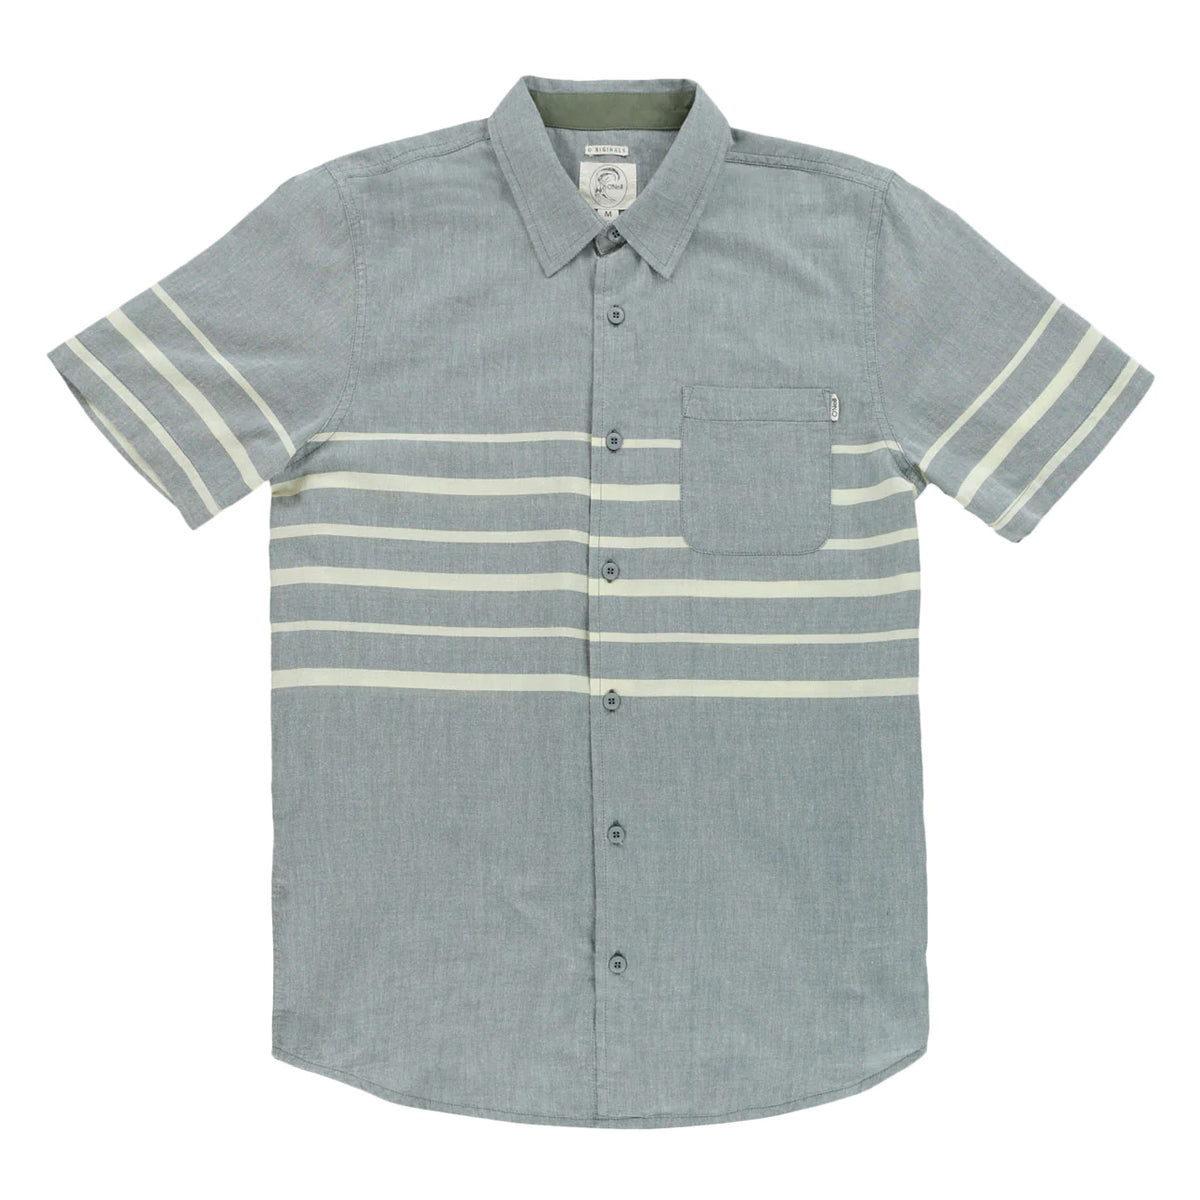 O'Neill Ledger Men's Button Up Short-Sleeve Shirts